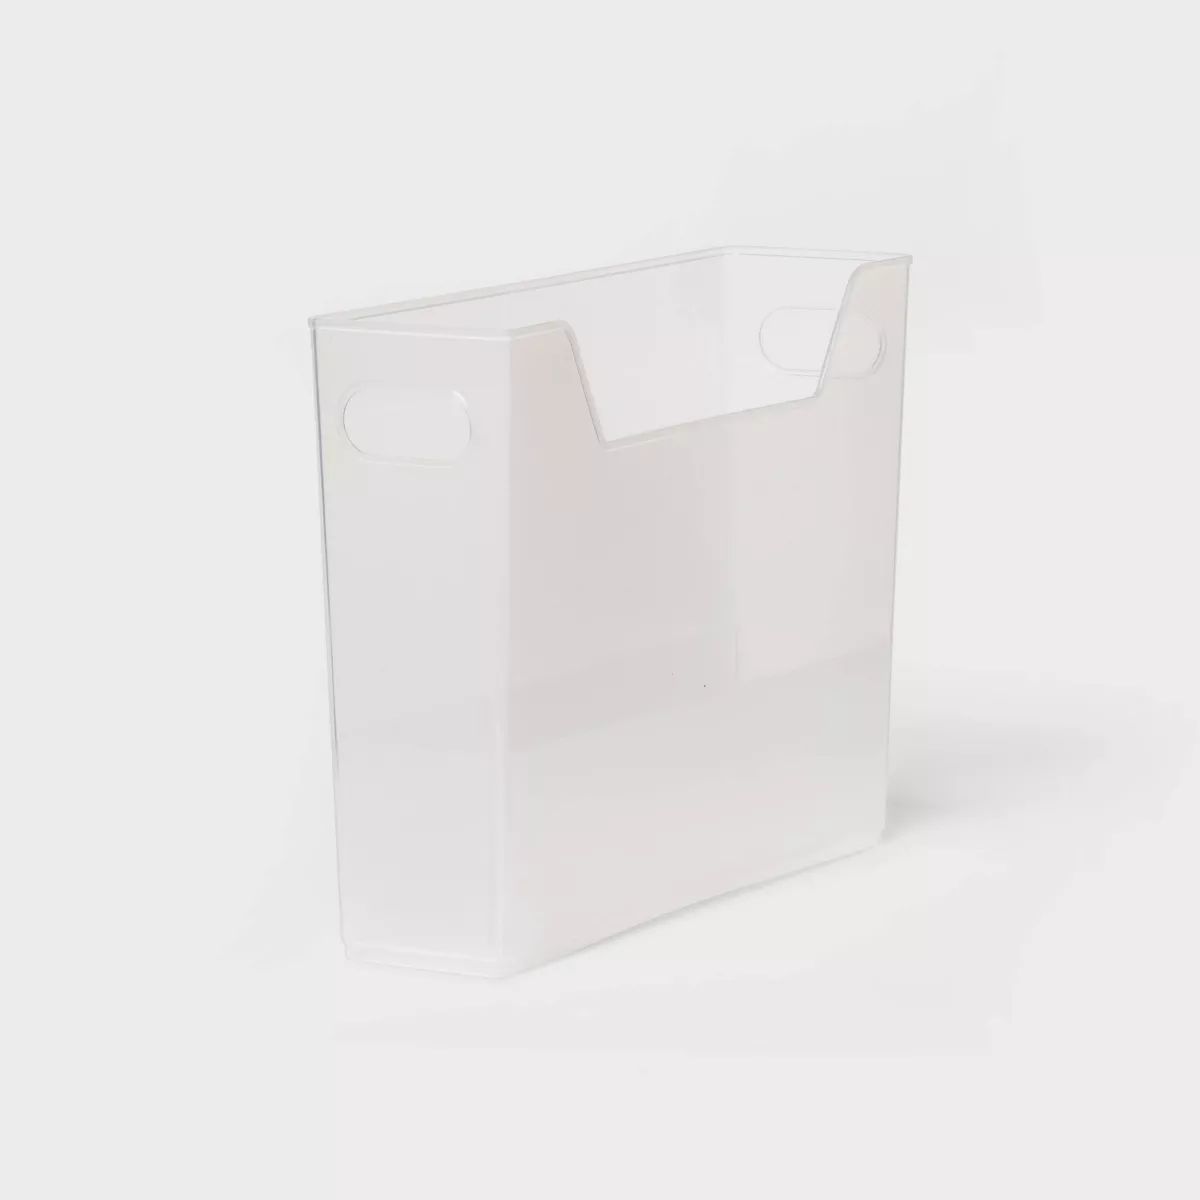 S Multipurpose Storage Bin Clear - Brightroom™ | Target